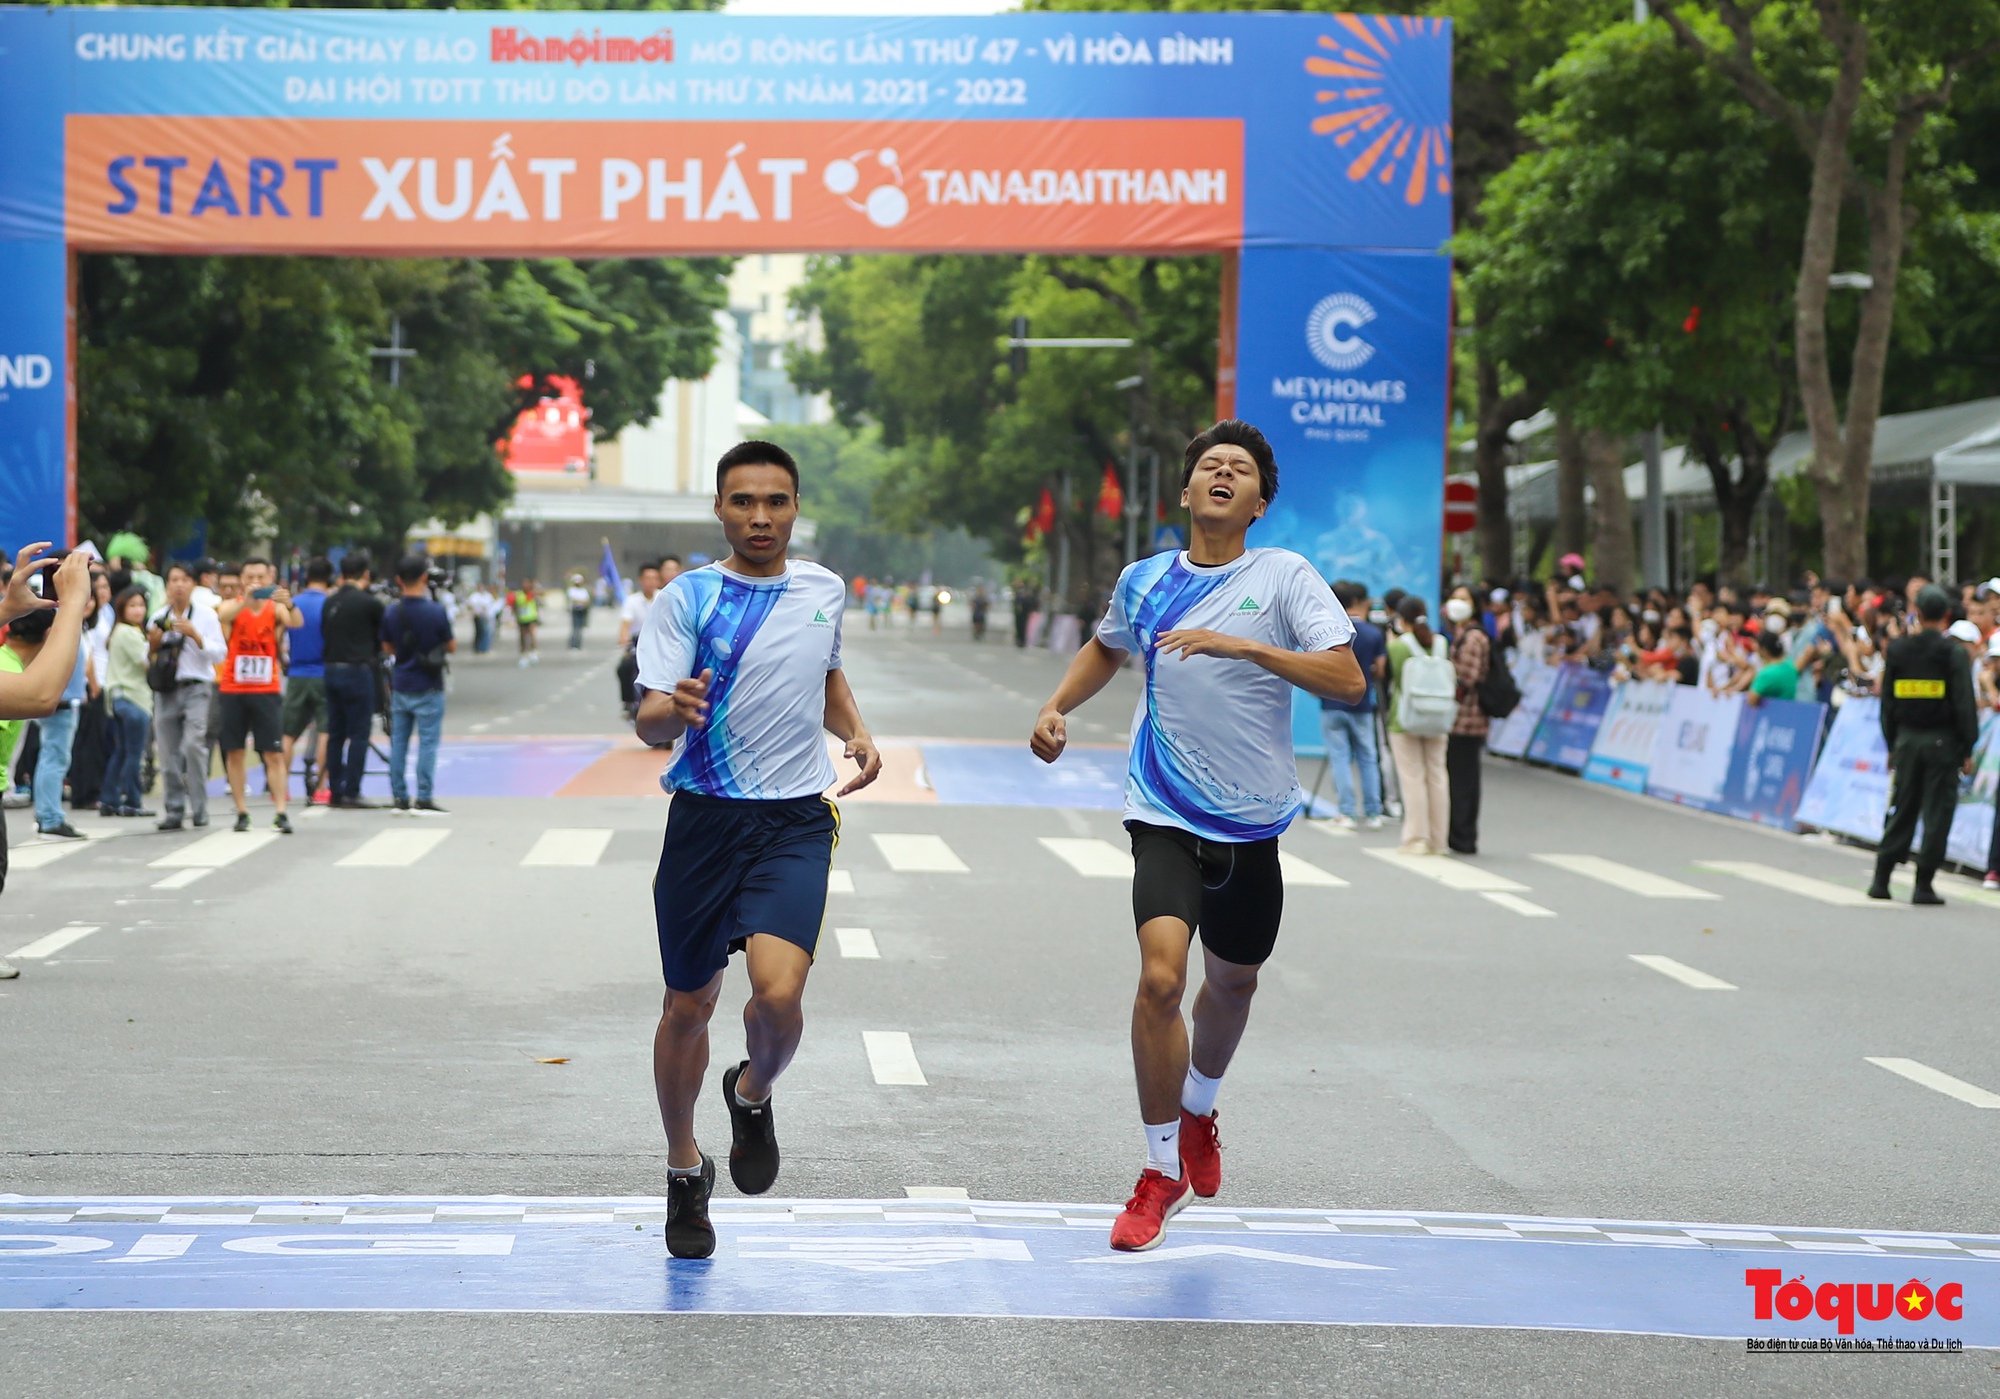 Hơn một ngàn vận động viên tranh tài tại Chung kết Giải chạy Báo Hànộimới lần thứ 47 - Vì hòa bình - Ảnh 14.